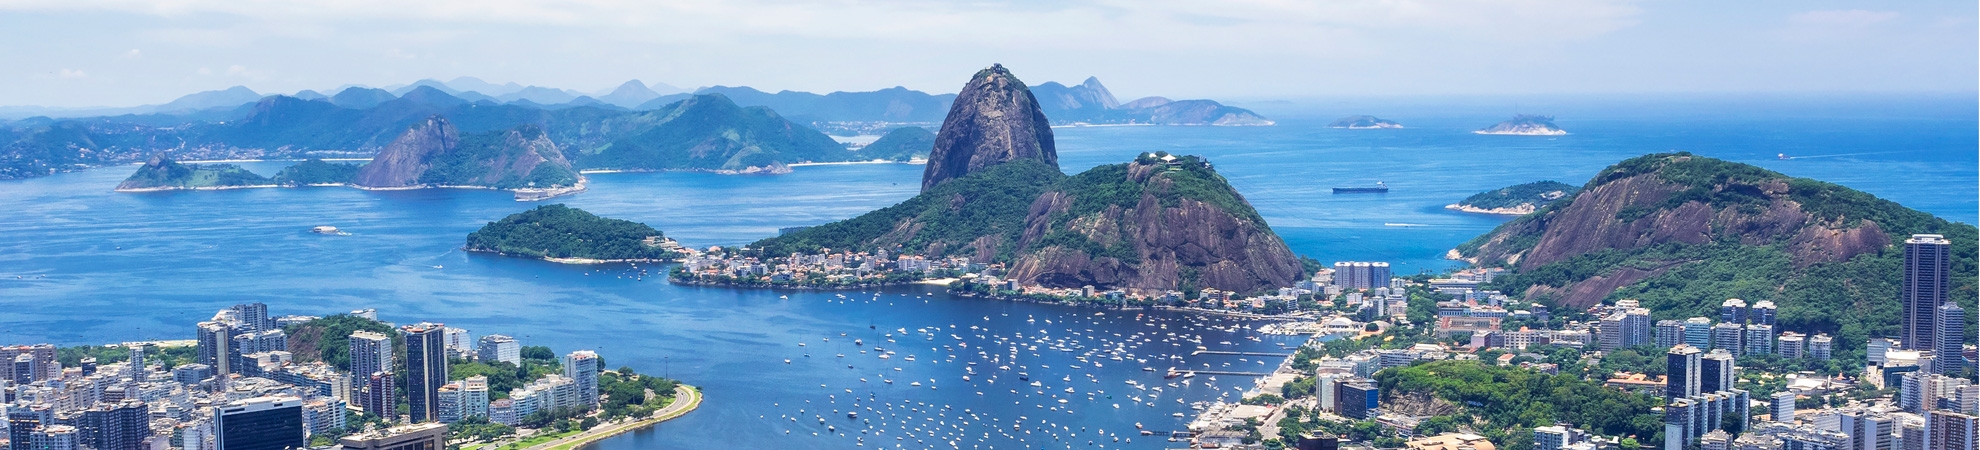 voyage Rio de Janeiro